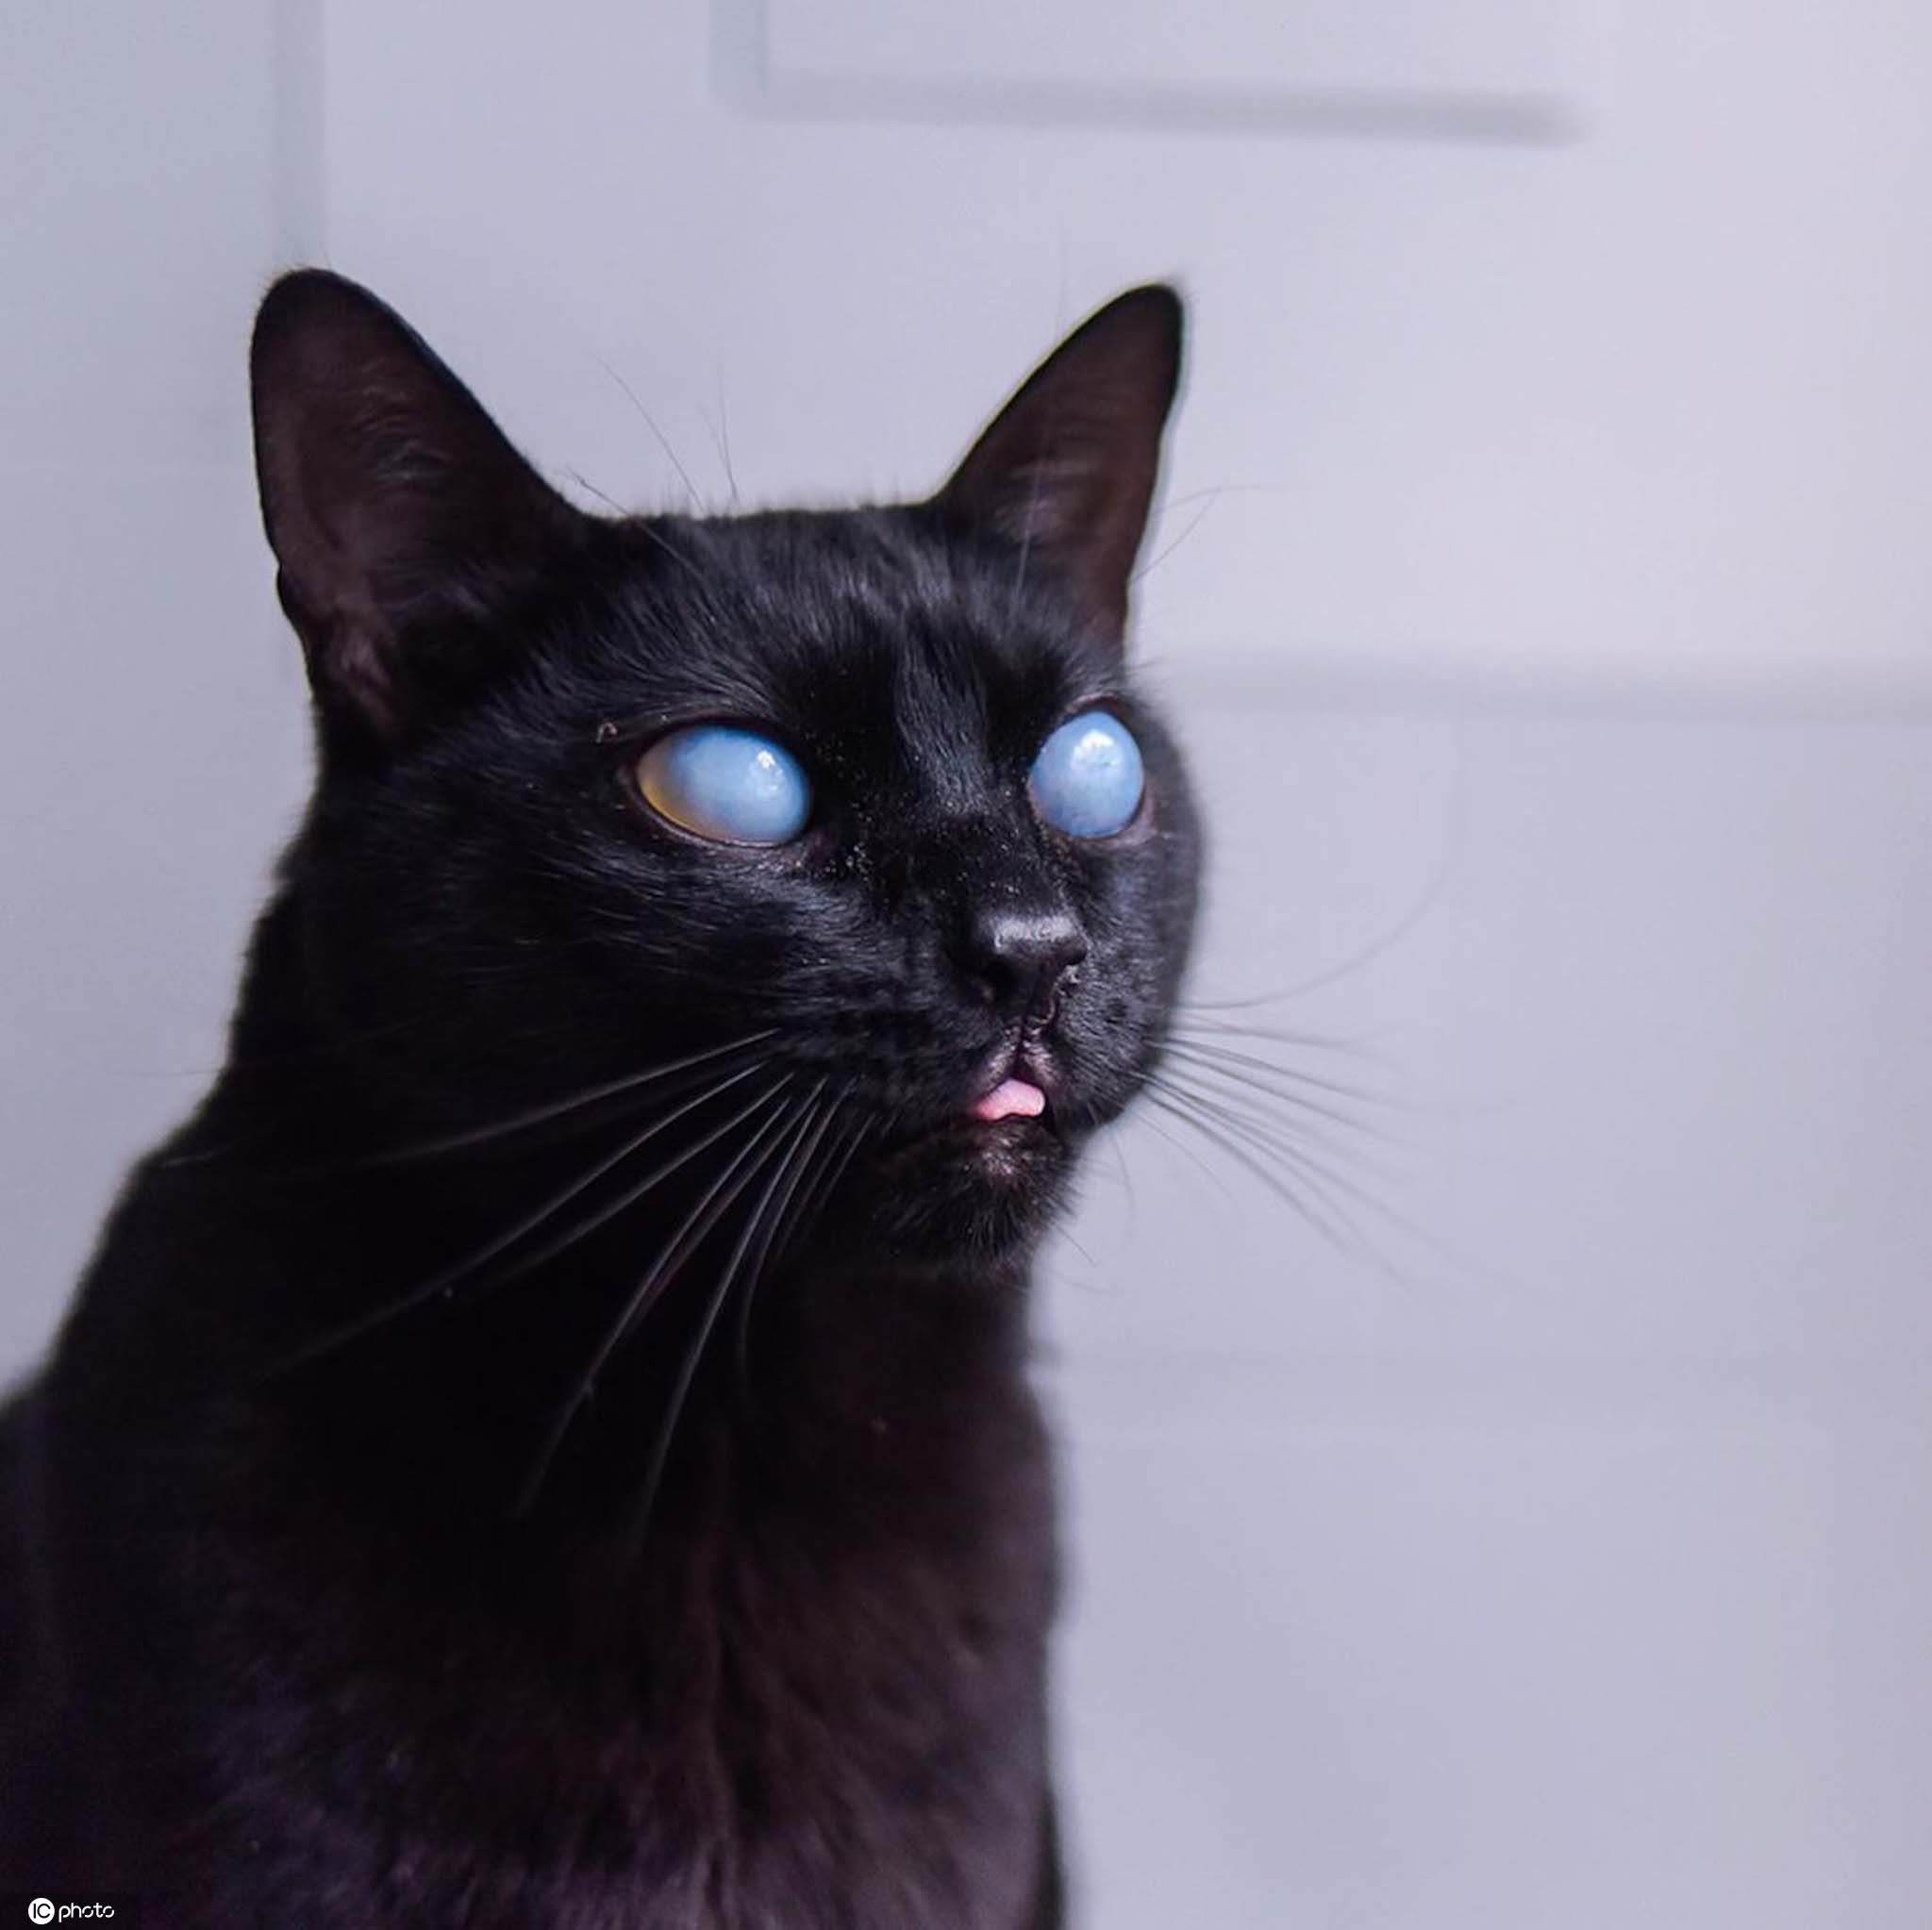 哥伦比亚黑猫双目失明 却因美丽蓝眼珠收割万千粉丝